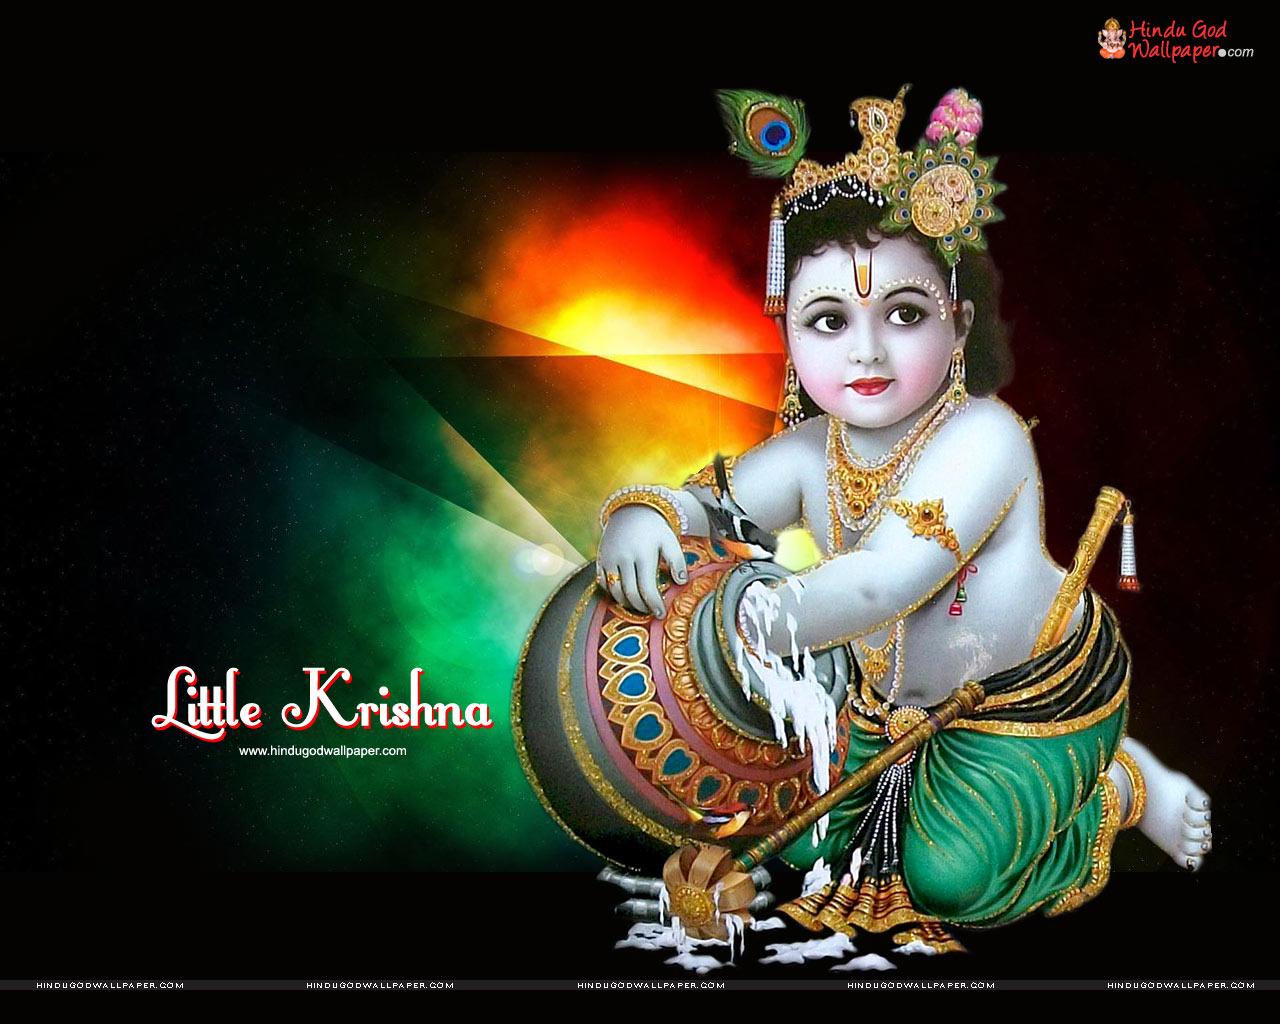 248 Bal Krishna Images, Stock Photos & Vectors | Shutterstock